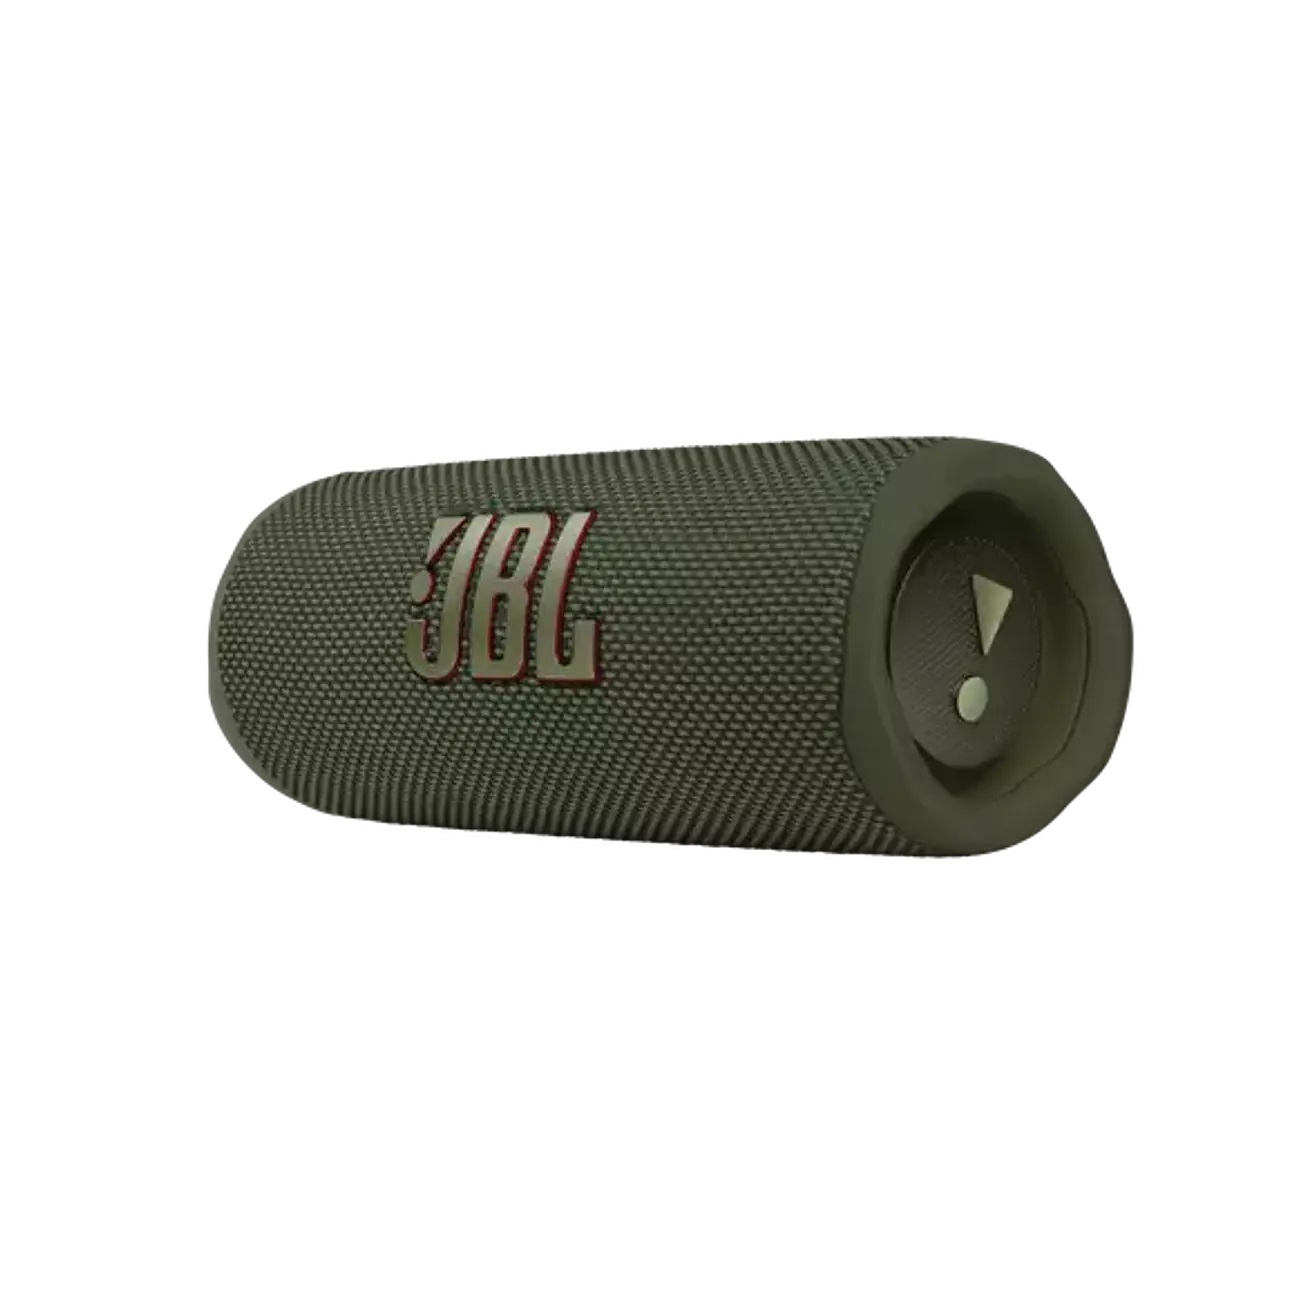 JBL Flip 6 - Altavoz Bluetooth portátil, sonido potente y graves profundos,  IPX7 impermeable, 12 horas de tiempo de reproducción, (negro) y